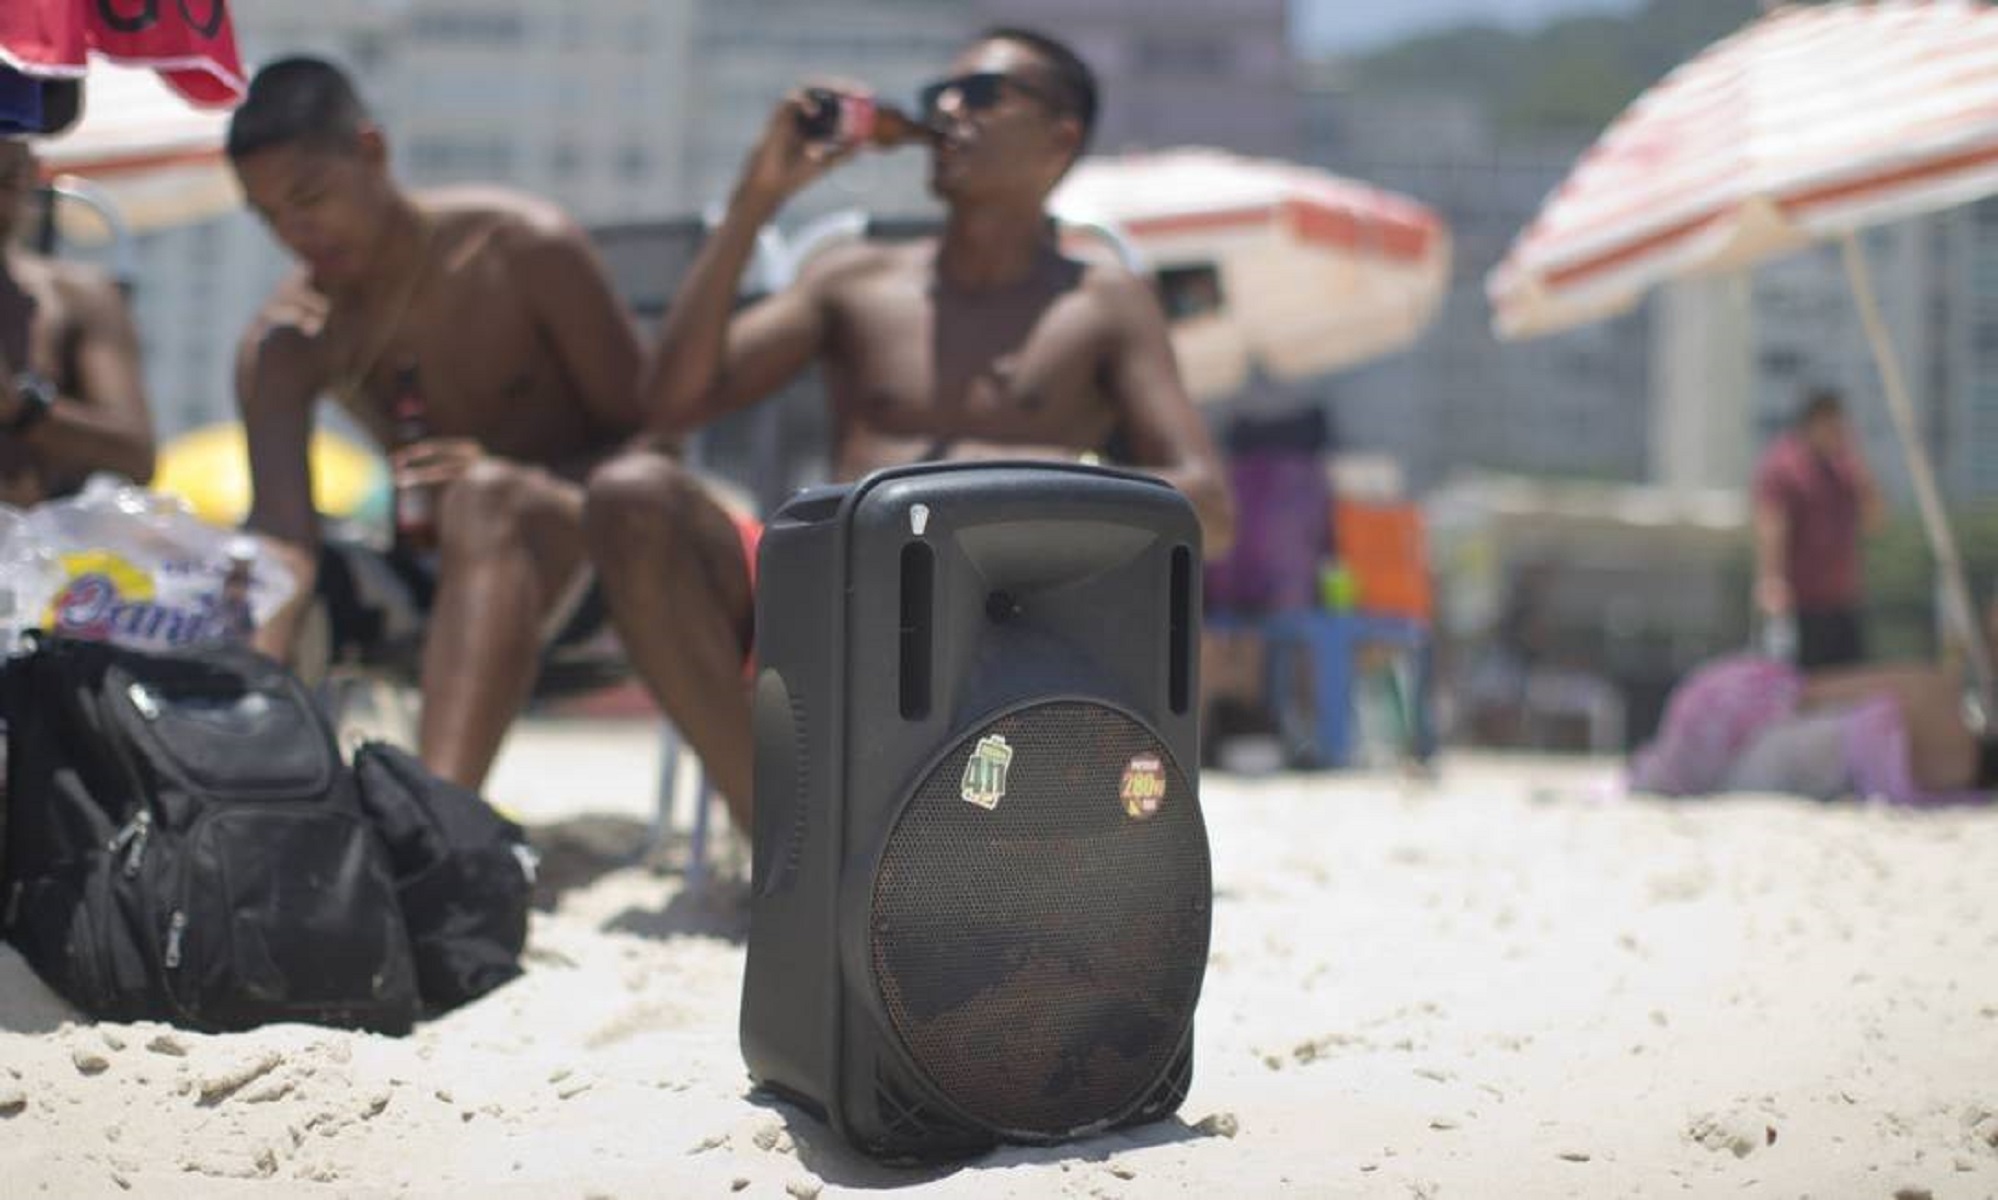 Prefeitura do Rio de Janeiro decreta a proibição de caixas de som nas praias cariocas (Márcia Foletto)